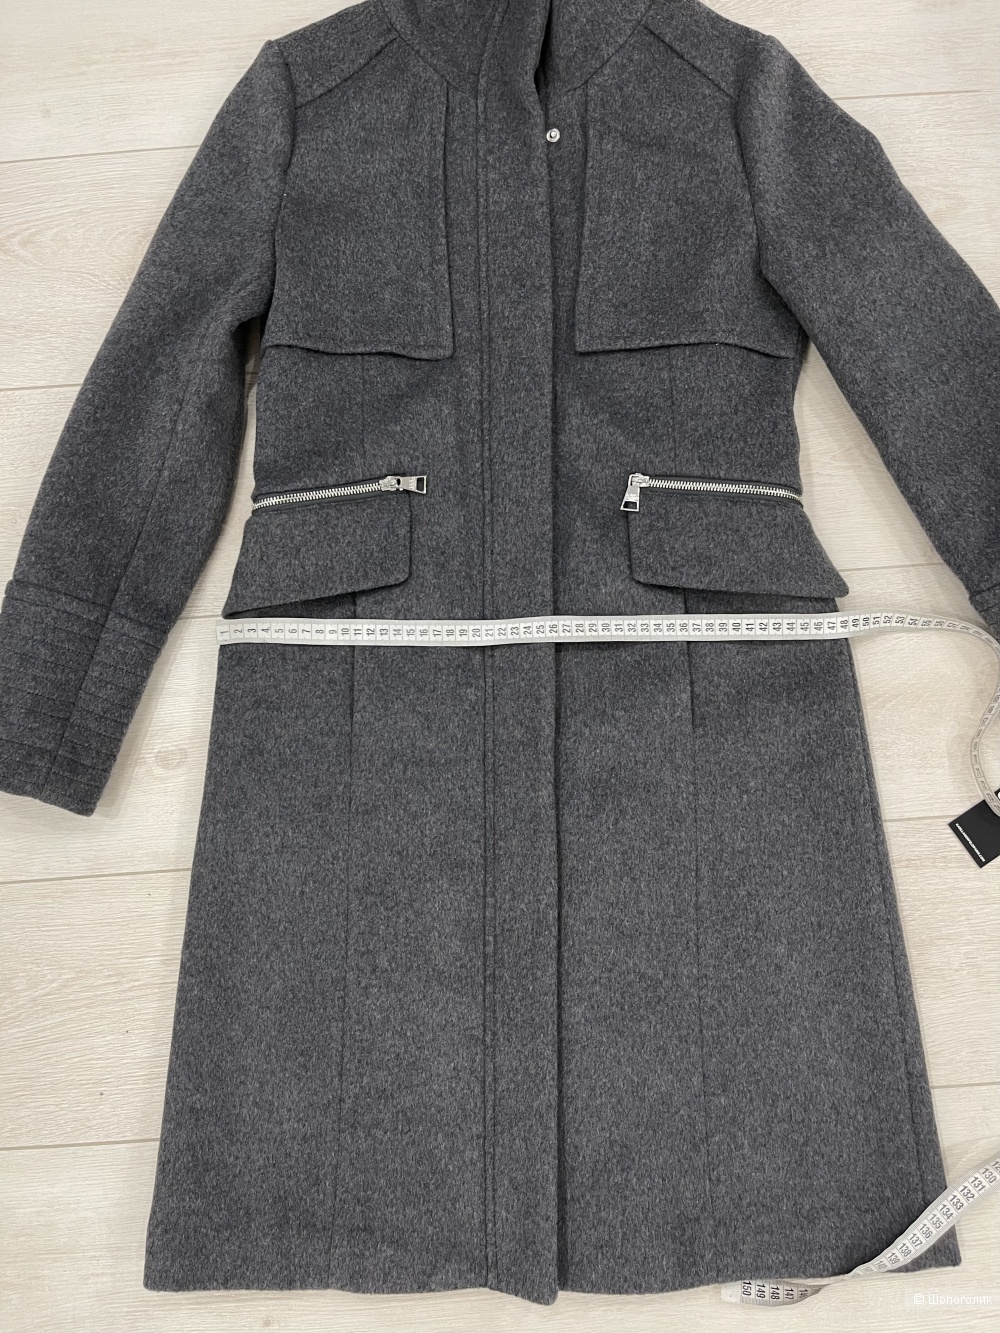 Пальто Karl Lagerfeld размер 42-44